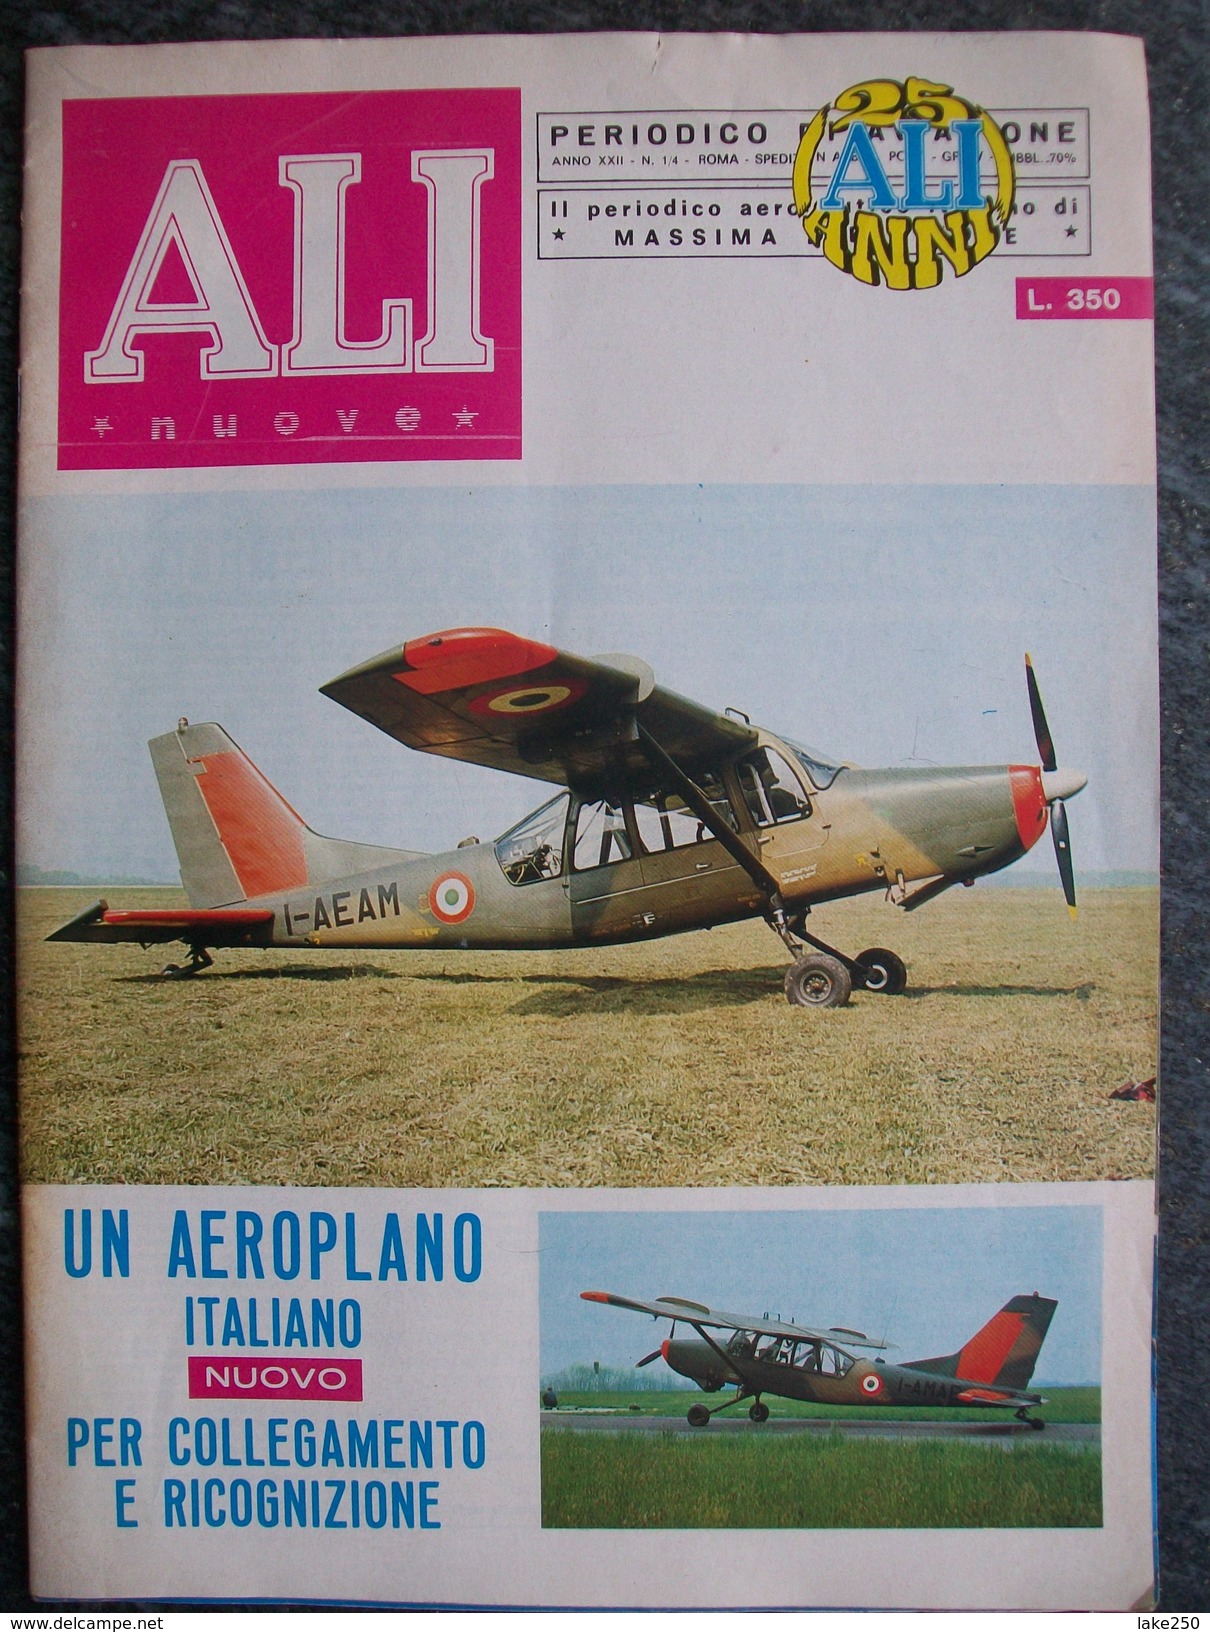 RIVISTA  ALI Nuove N°1/4 Del 1970  Aerei Aeroplani - Motoren